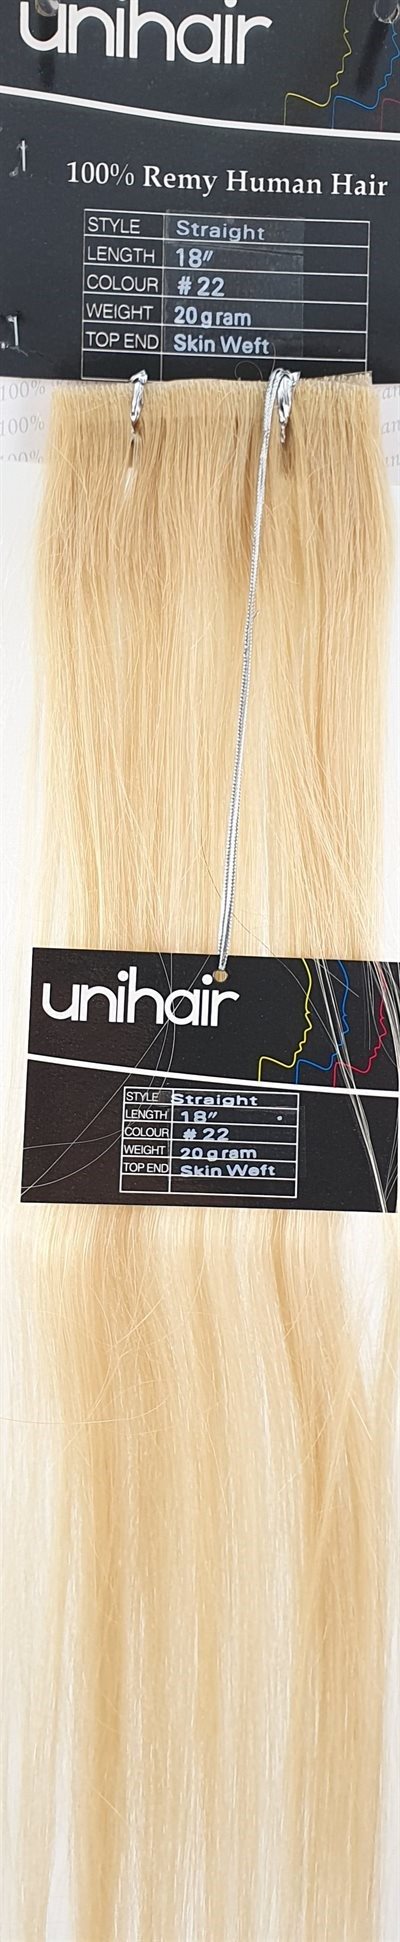  Human Hair - Skin Weft hair, color 22 - 18" (45 cm. length.)